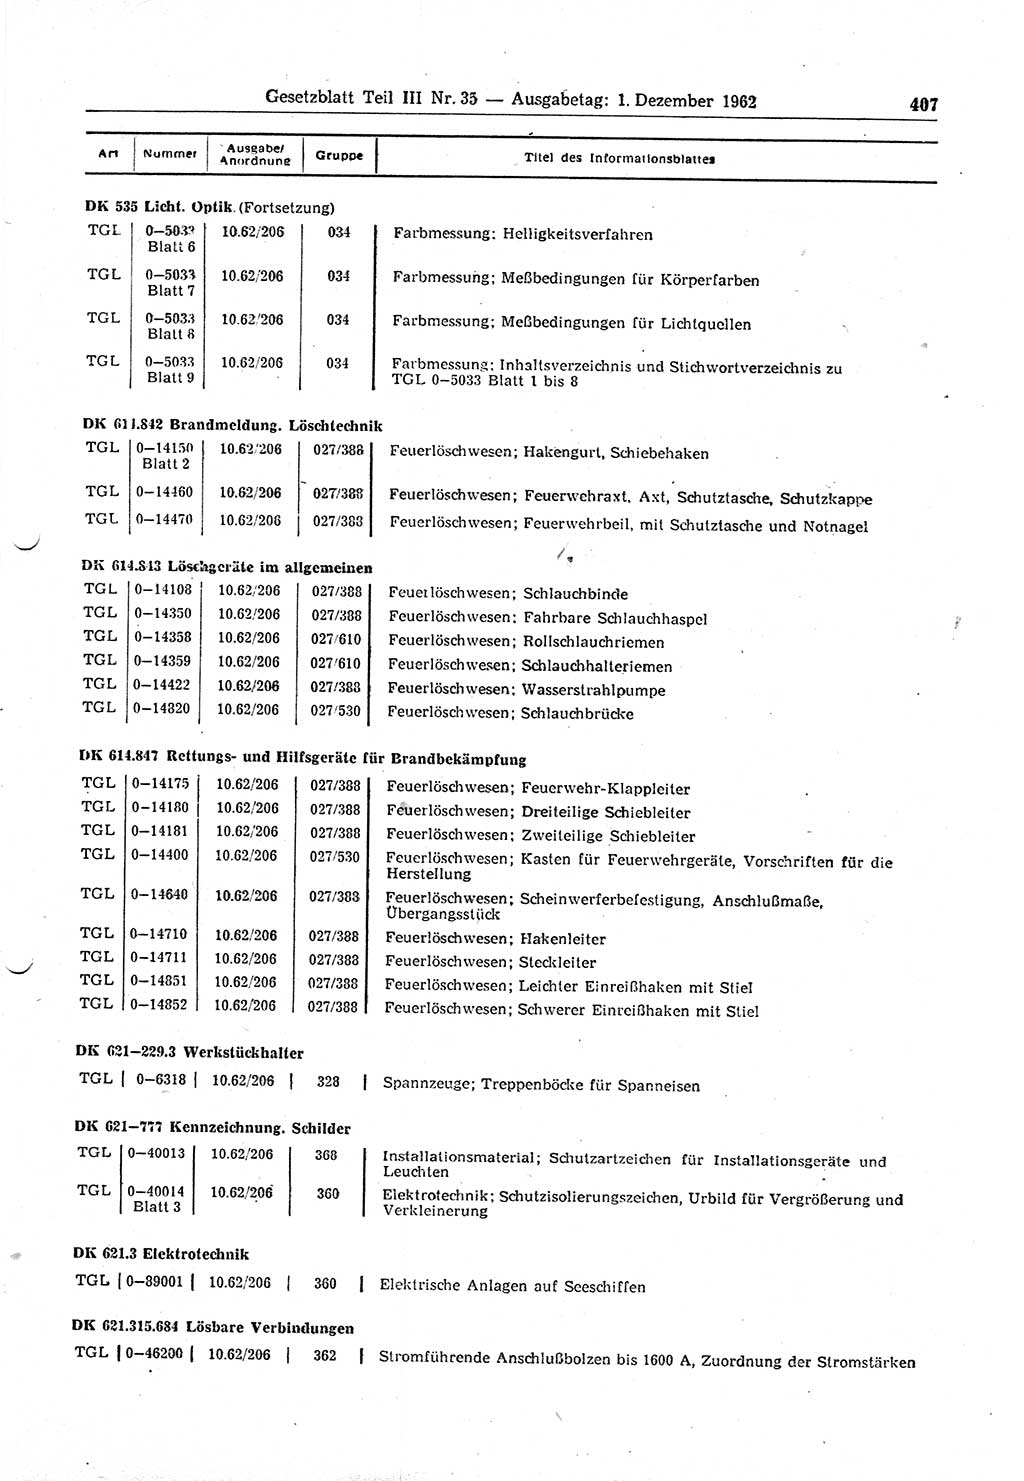 Gesetzblatt (GBl.) der Deutschen Demokratischen Republik (DDR) Teil ⅠⅠⅠ 1962, Seite 407 (GBl. DDR ⅠⅠⅠ 1962, S. 407)